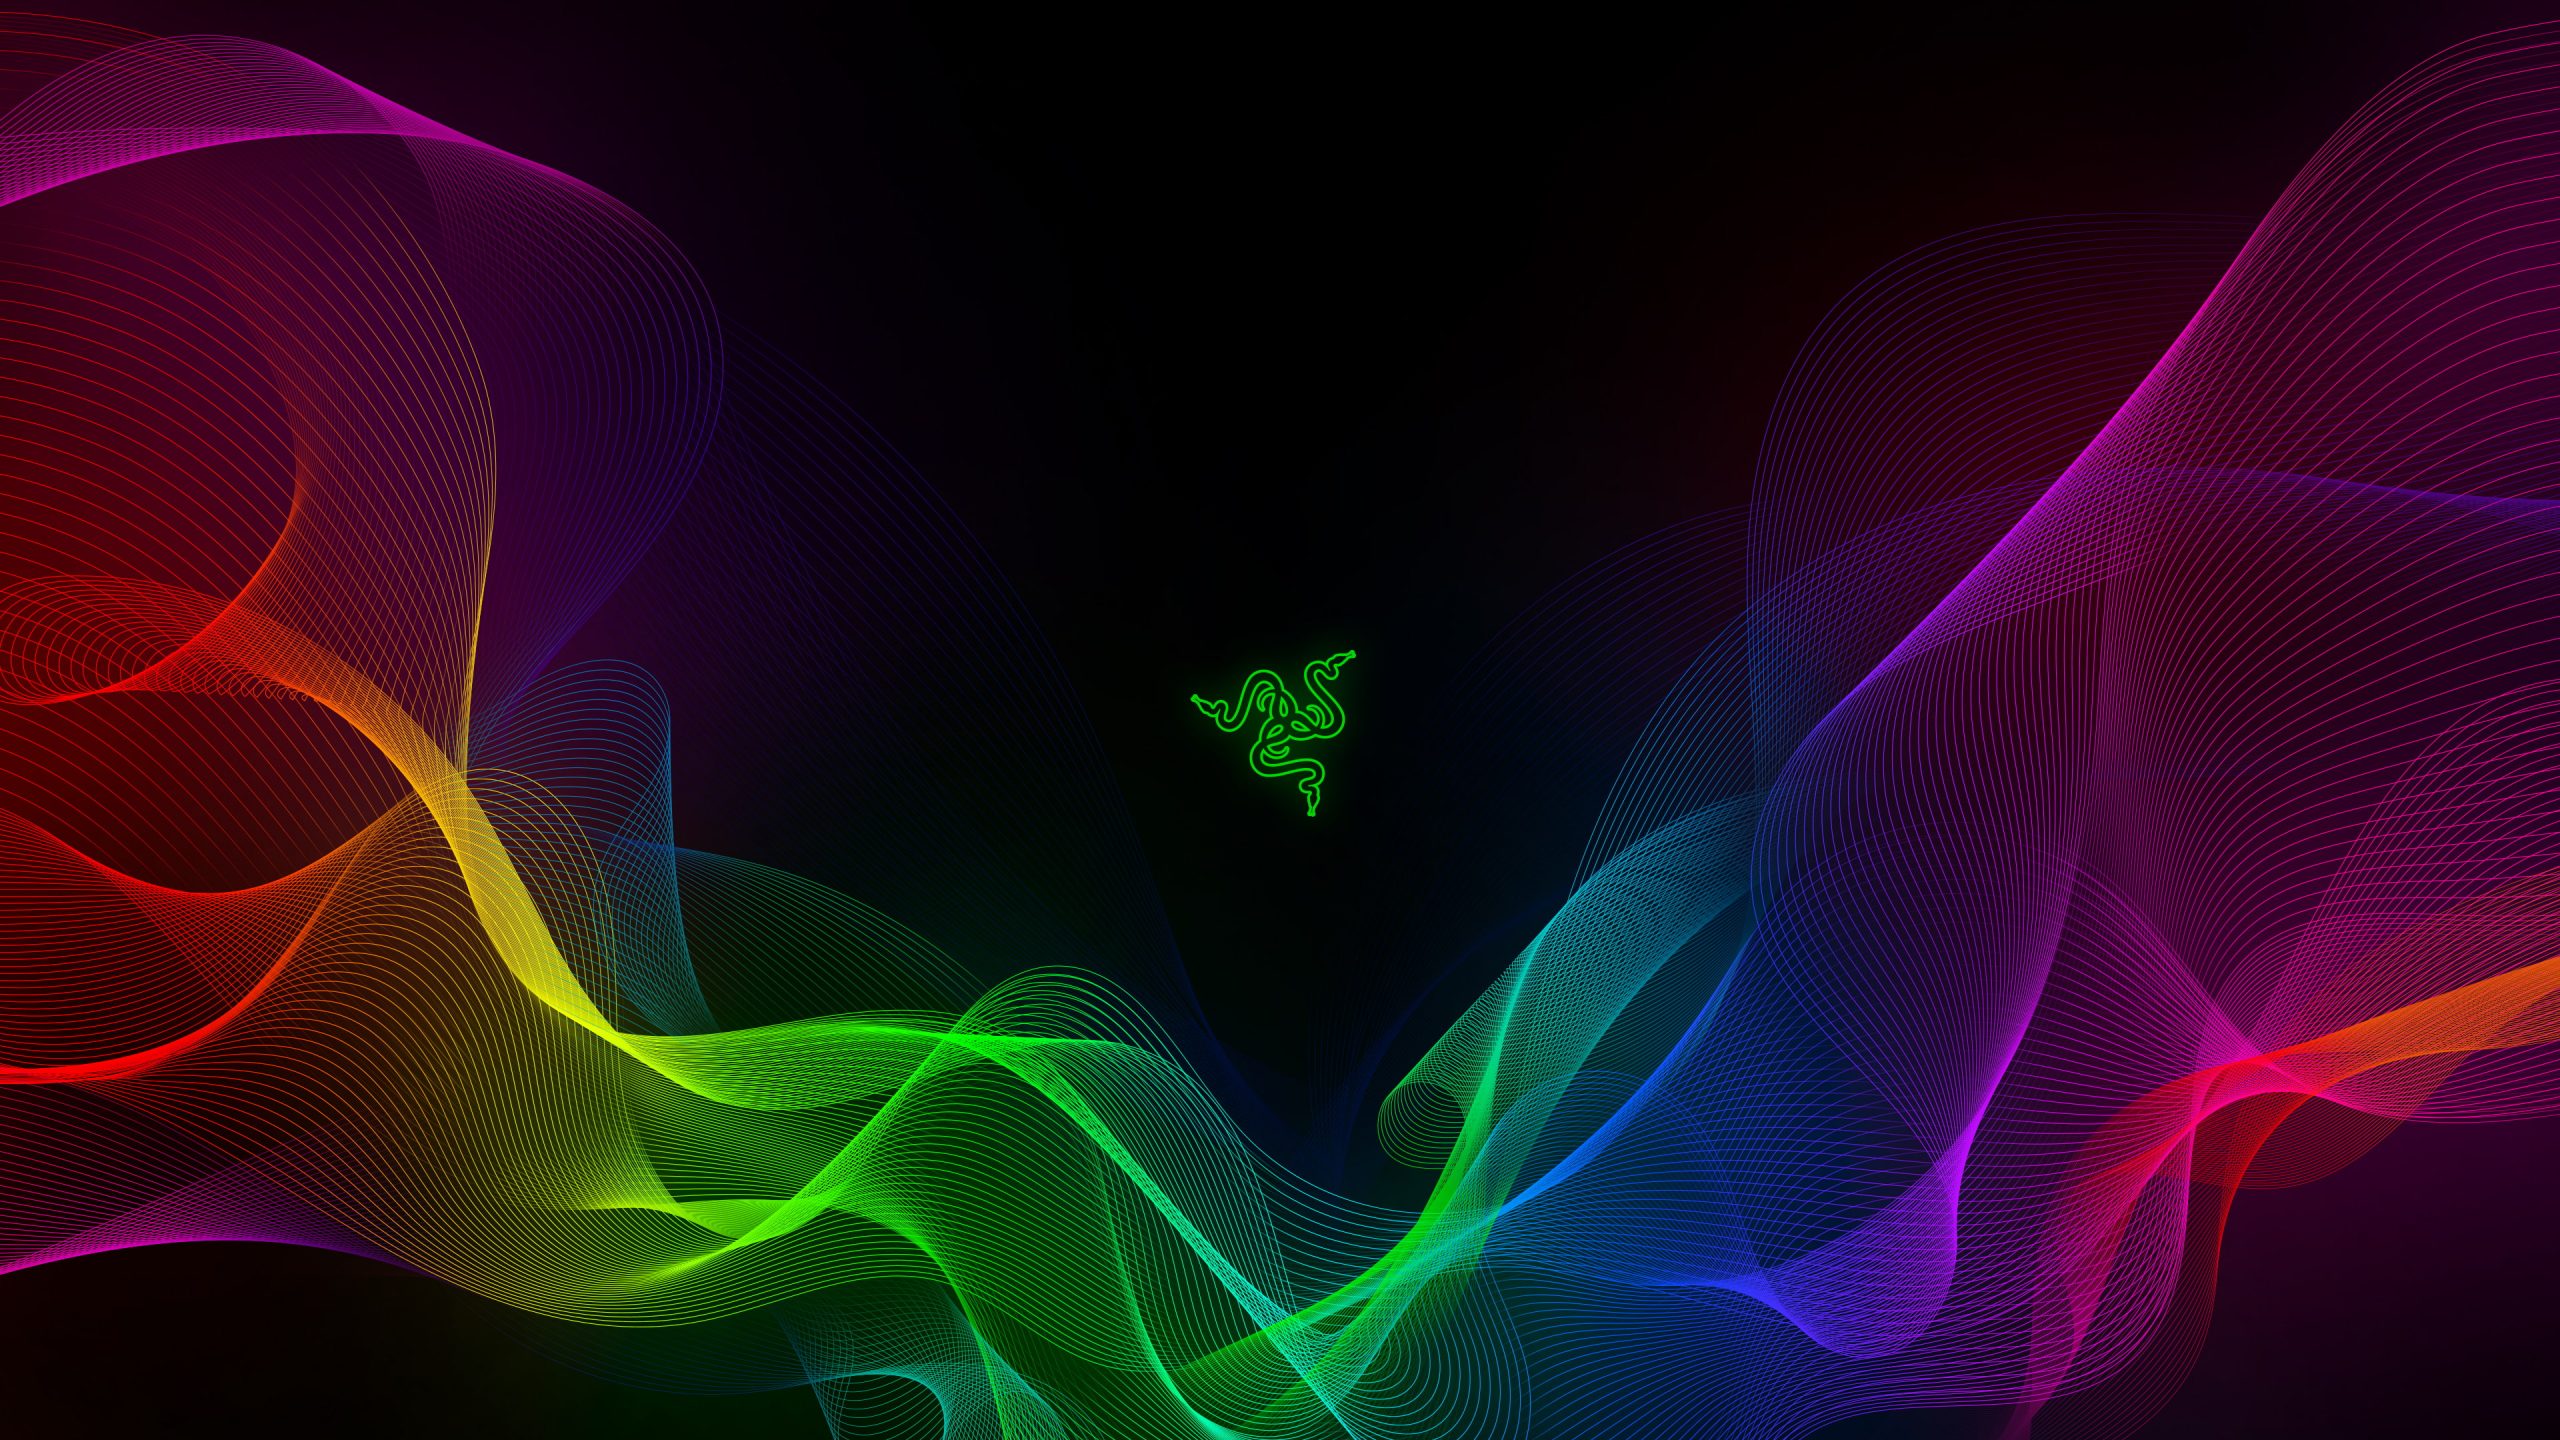 Razer wallpaper, PC gaming, colorful, logo, Razer Inc., abstract, multi colored